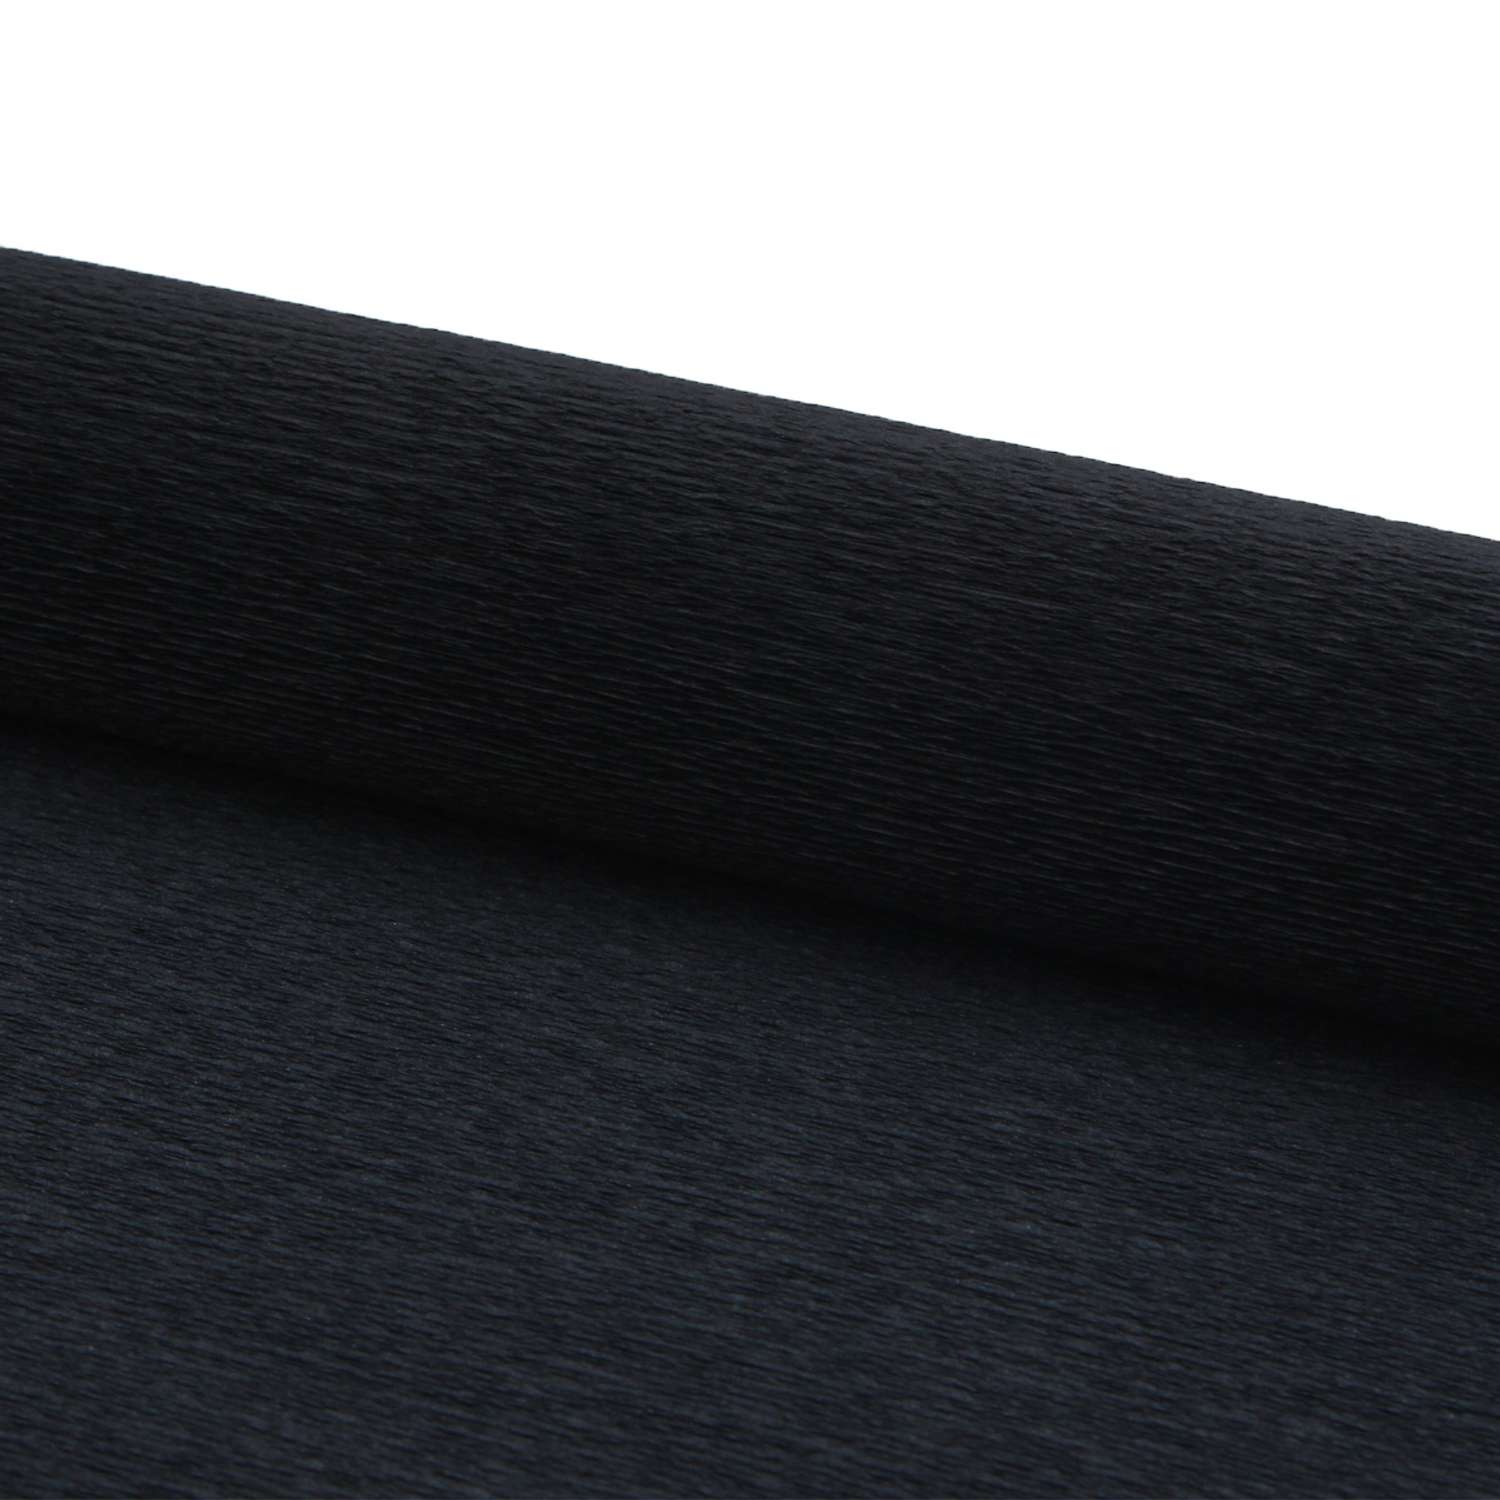 Бумага Айрис гофрированная креповая для творчества 50 см х 2.5 м 140 г черная - фото 3